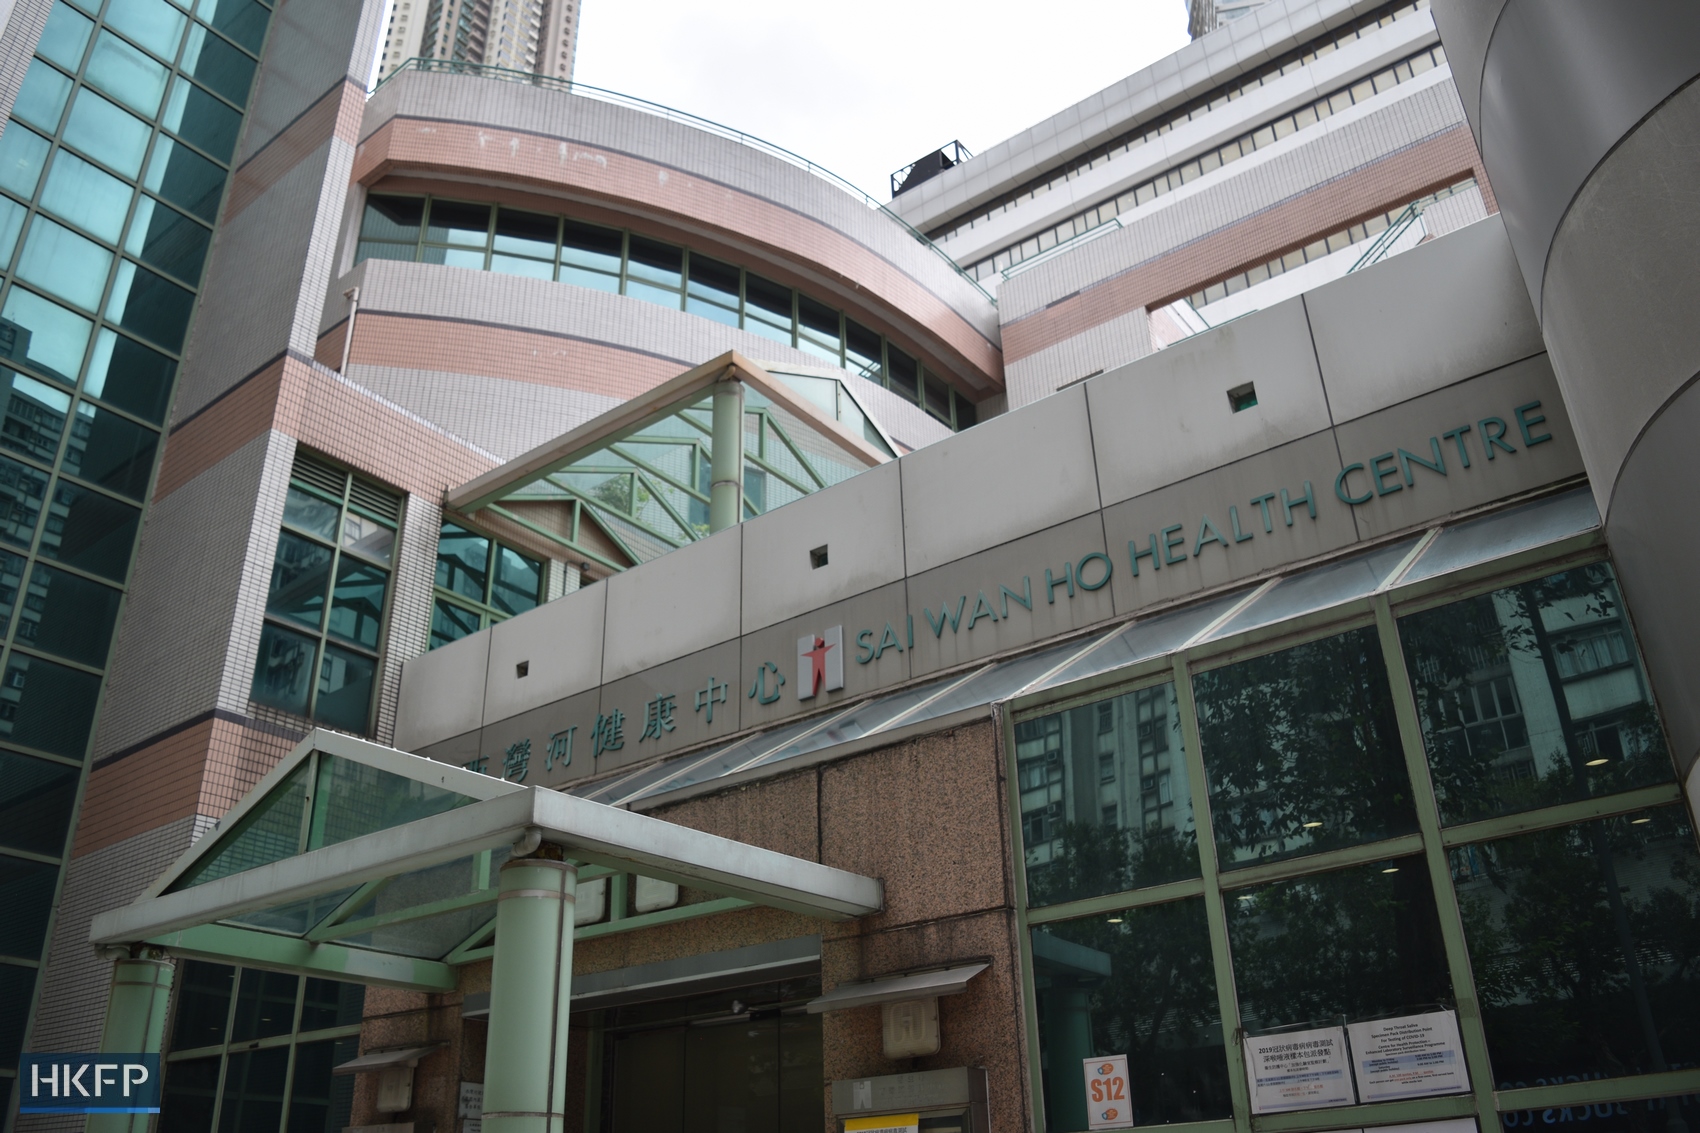 Sai Wan Ho Health Centre